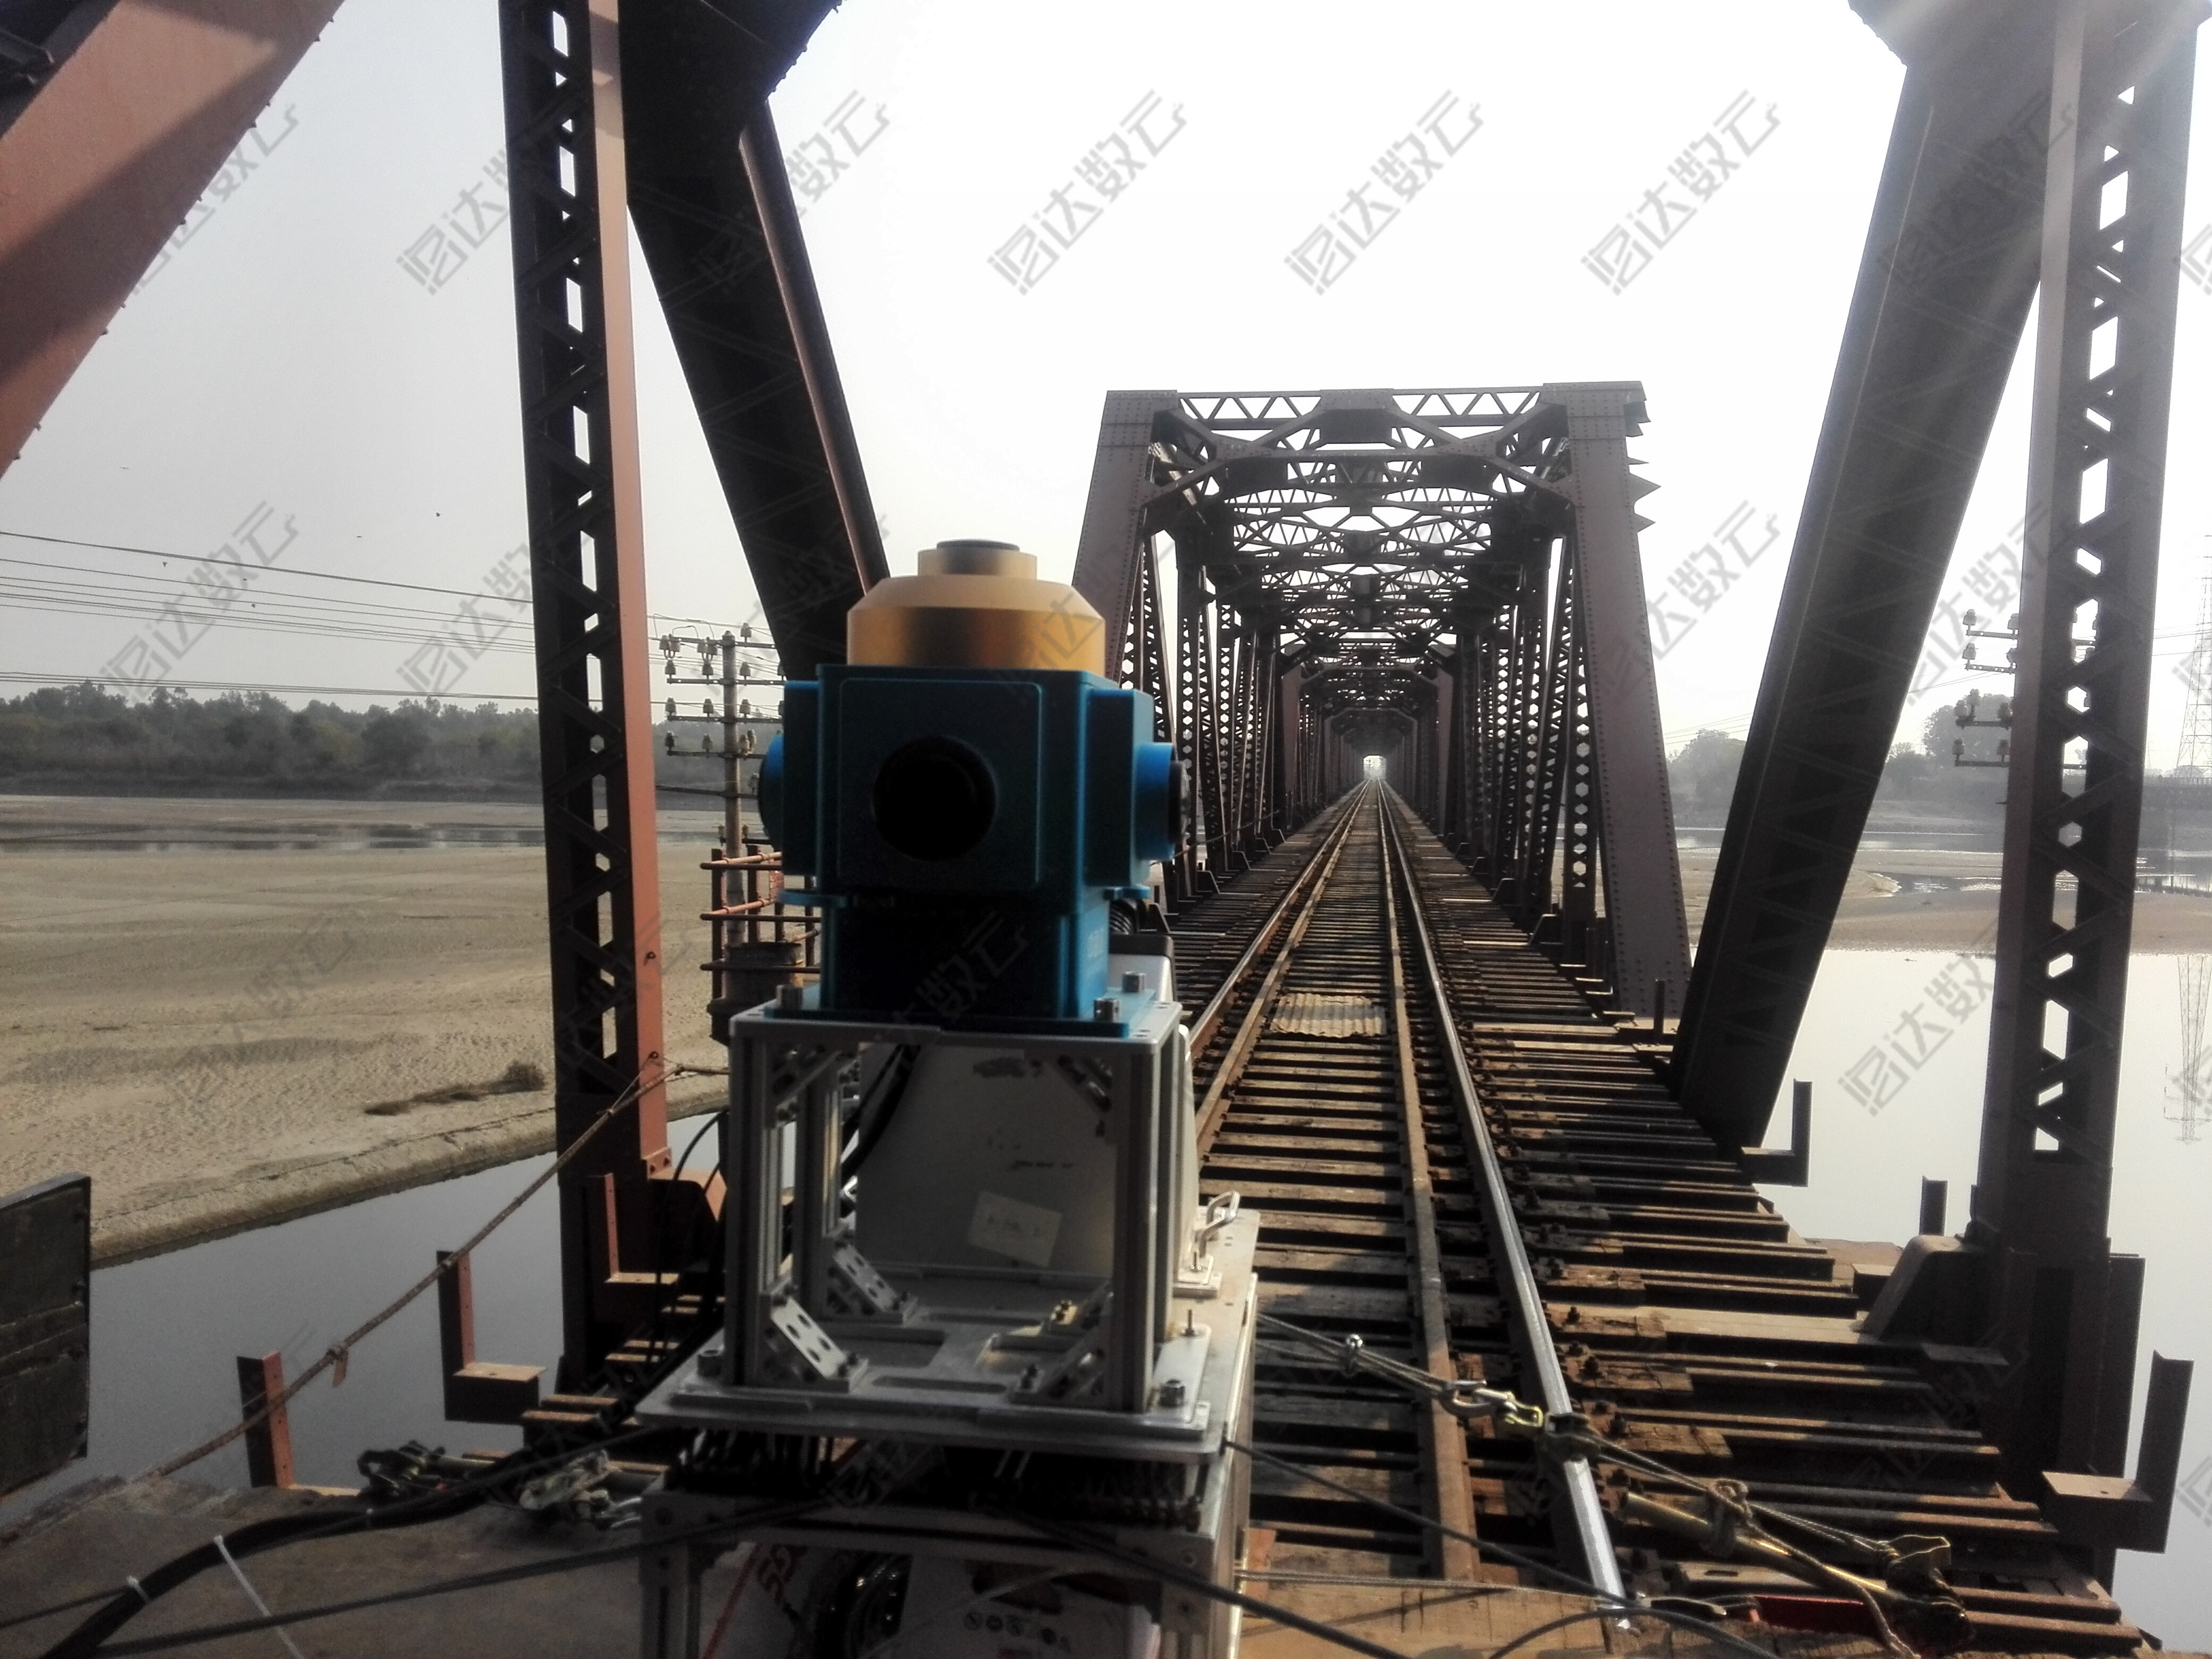  三维激光移动测量系统在海外铁路建设方面的应用